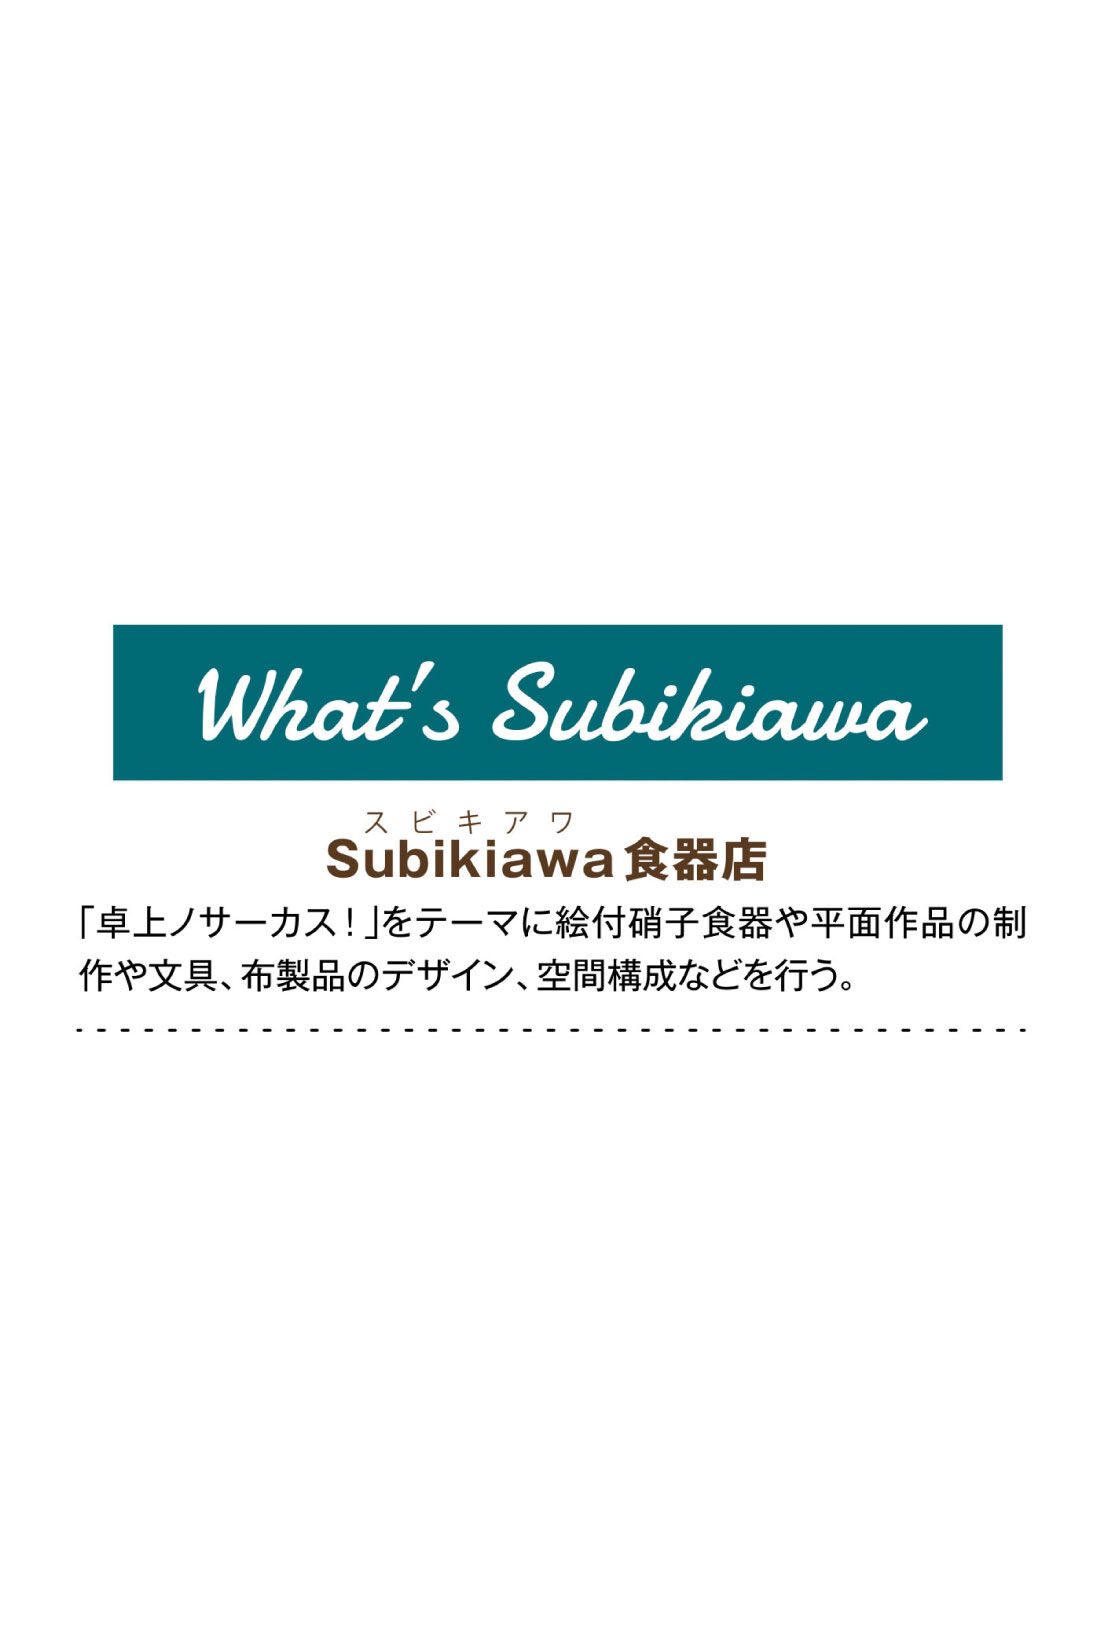 フェリシモMama|Subikiawa食器店さんとつくった クリームソーダ柄のじんべい